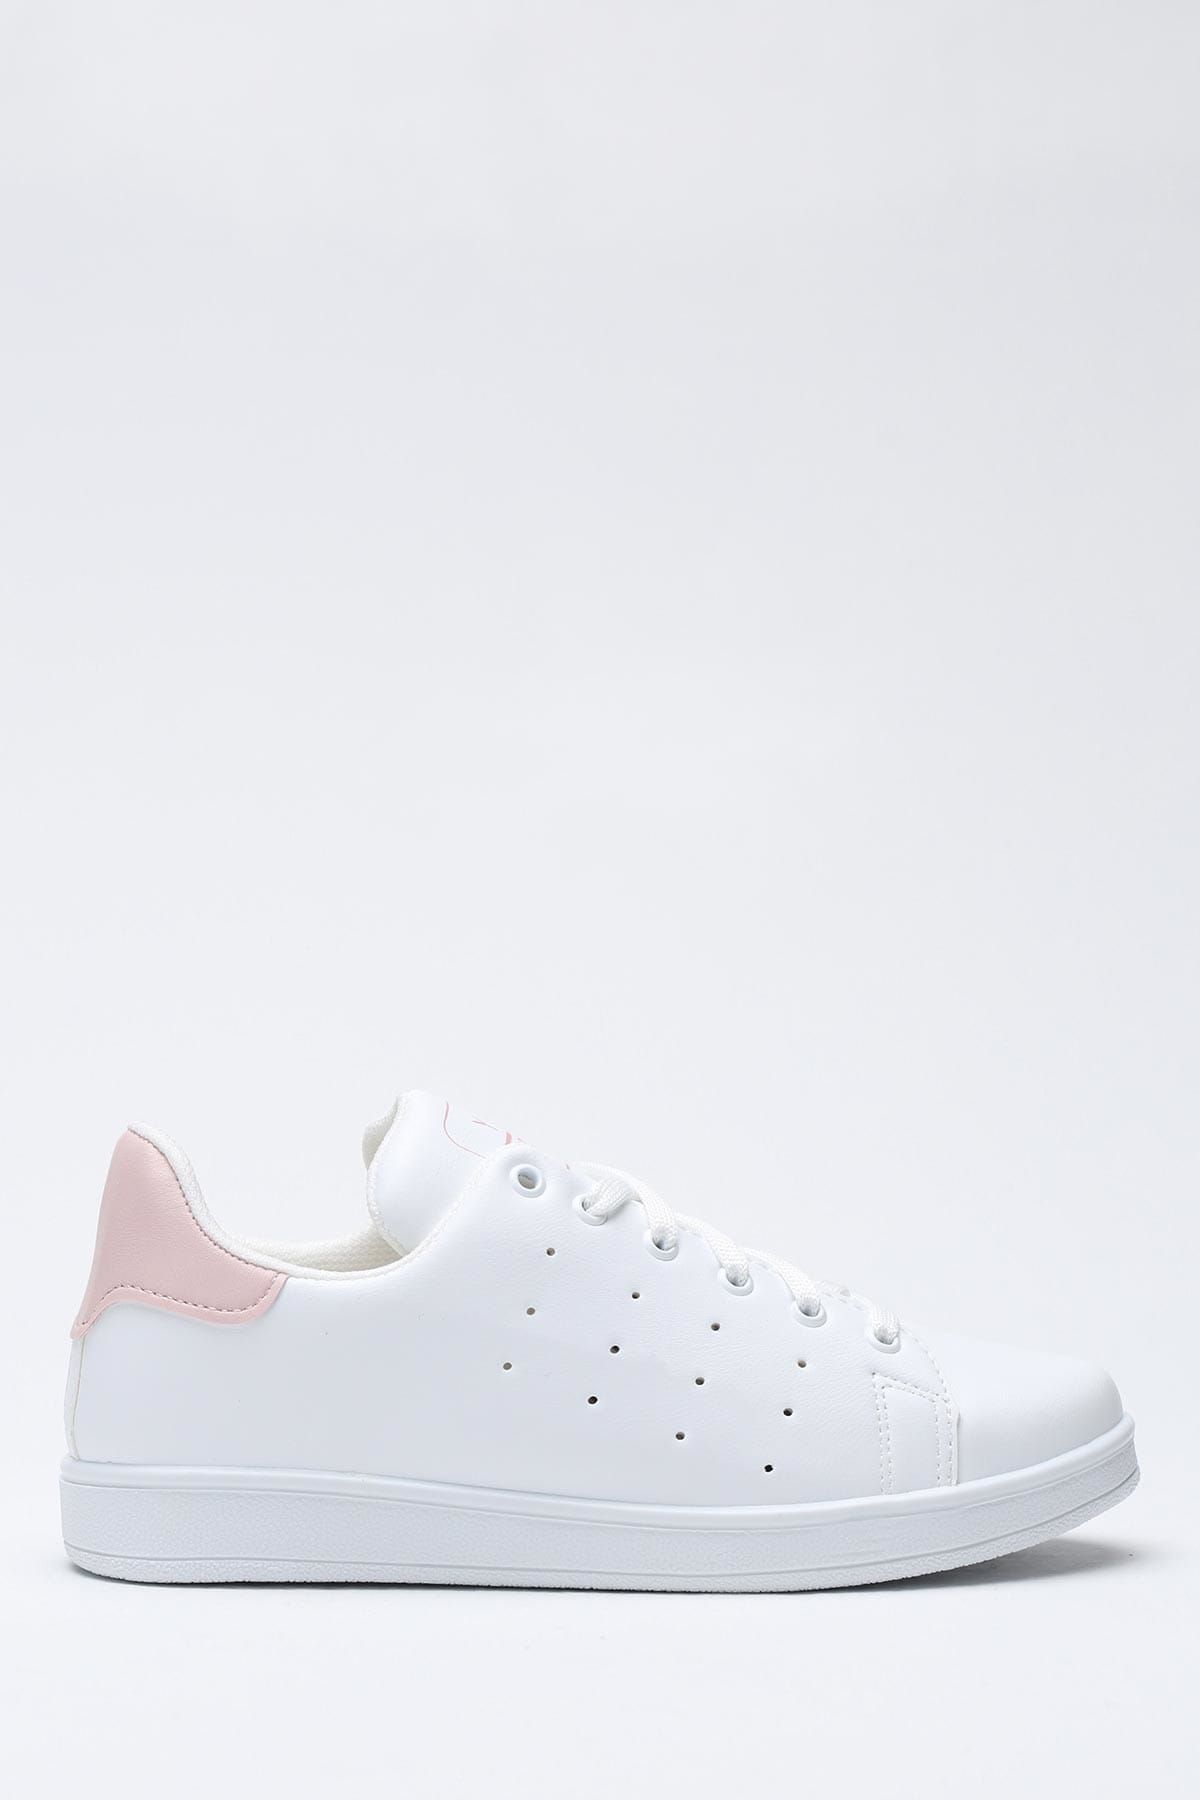 Ayakkabı Modası Beyaz Pudra Kadın Spor Ayakkabı 1938-9-4207-1